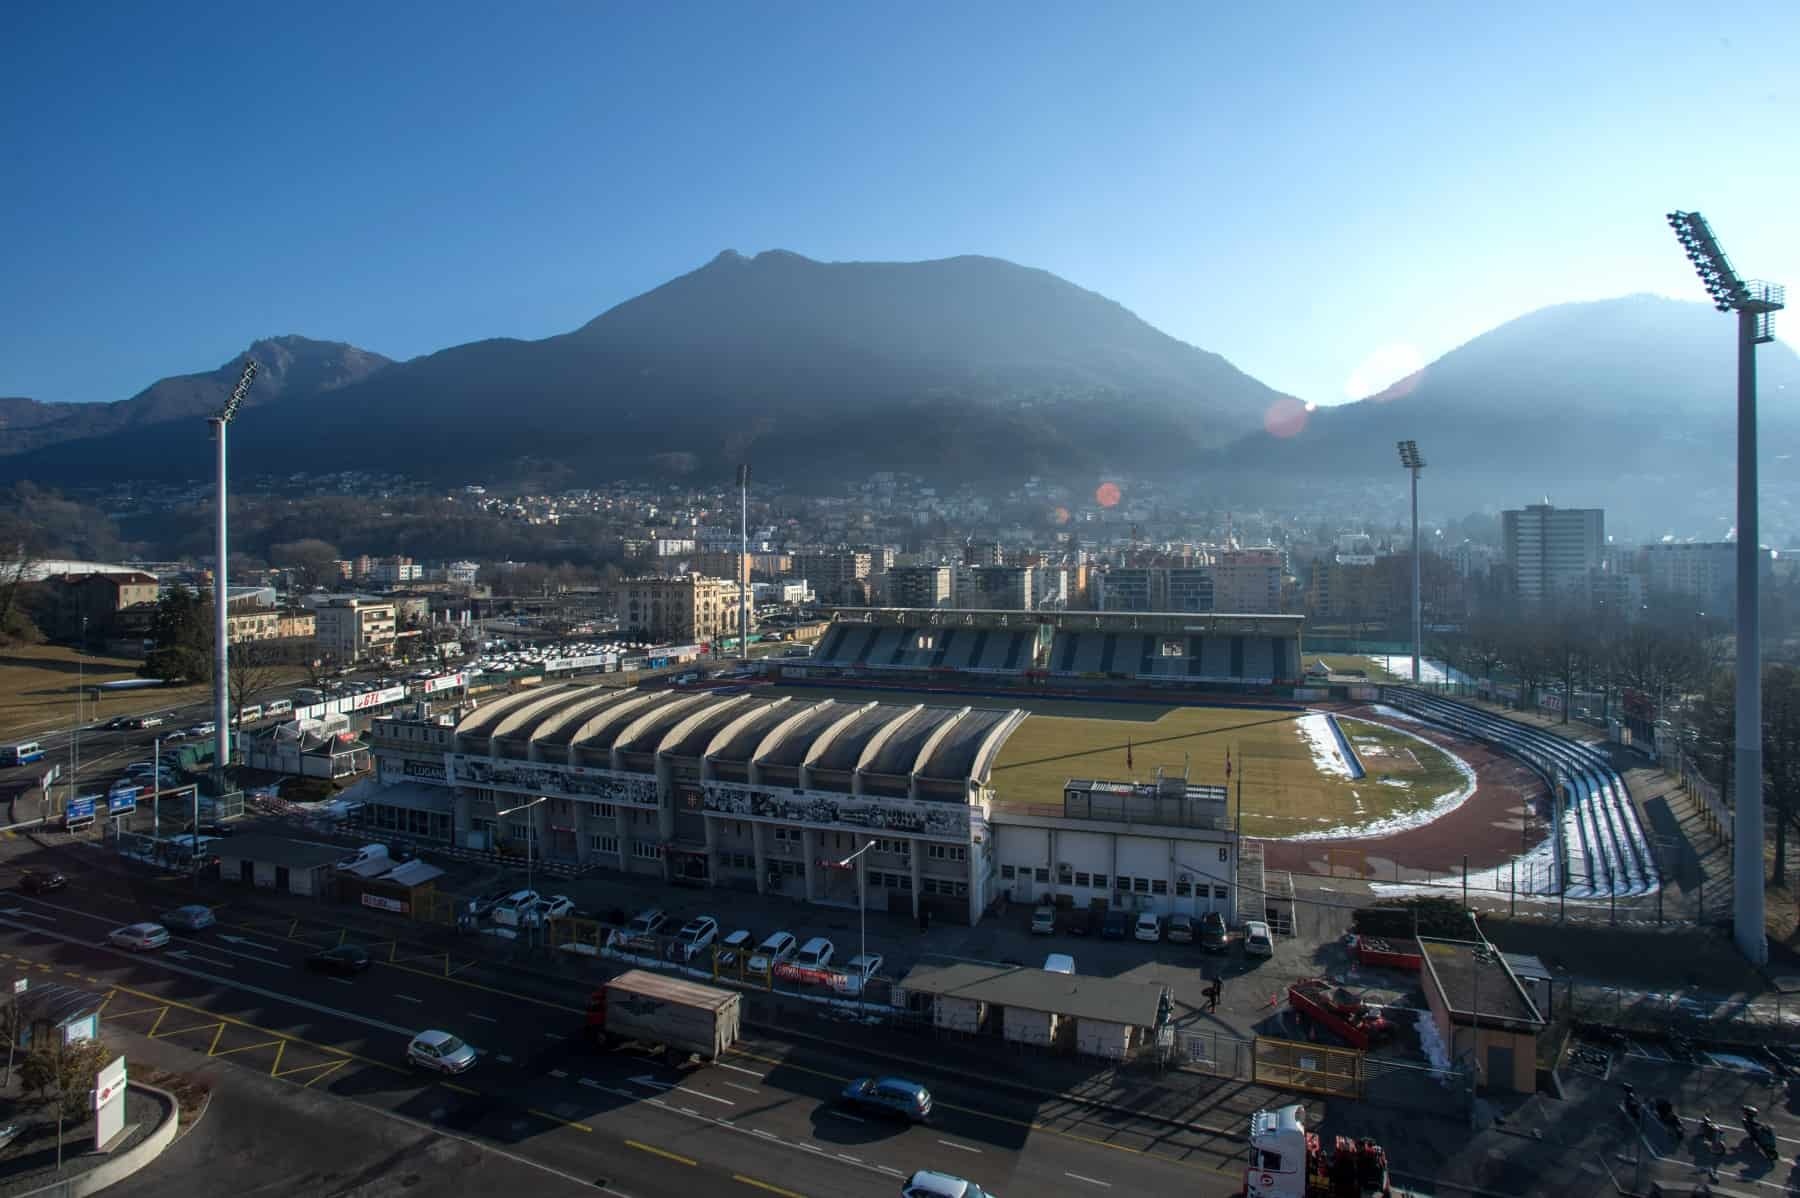 FC Lugano: 18 Football Club Facts 